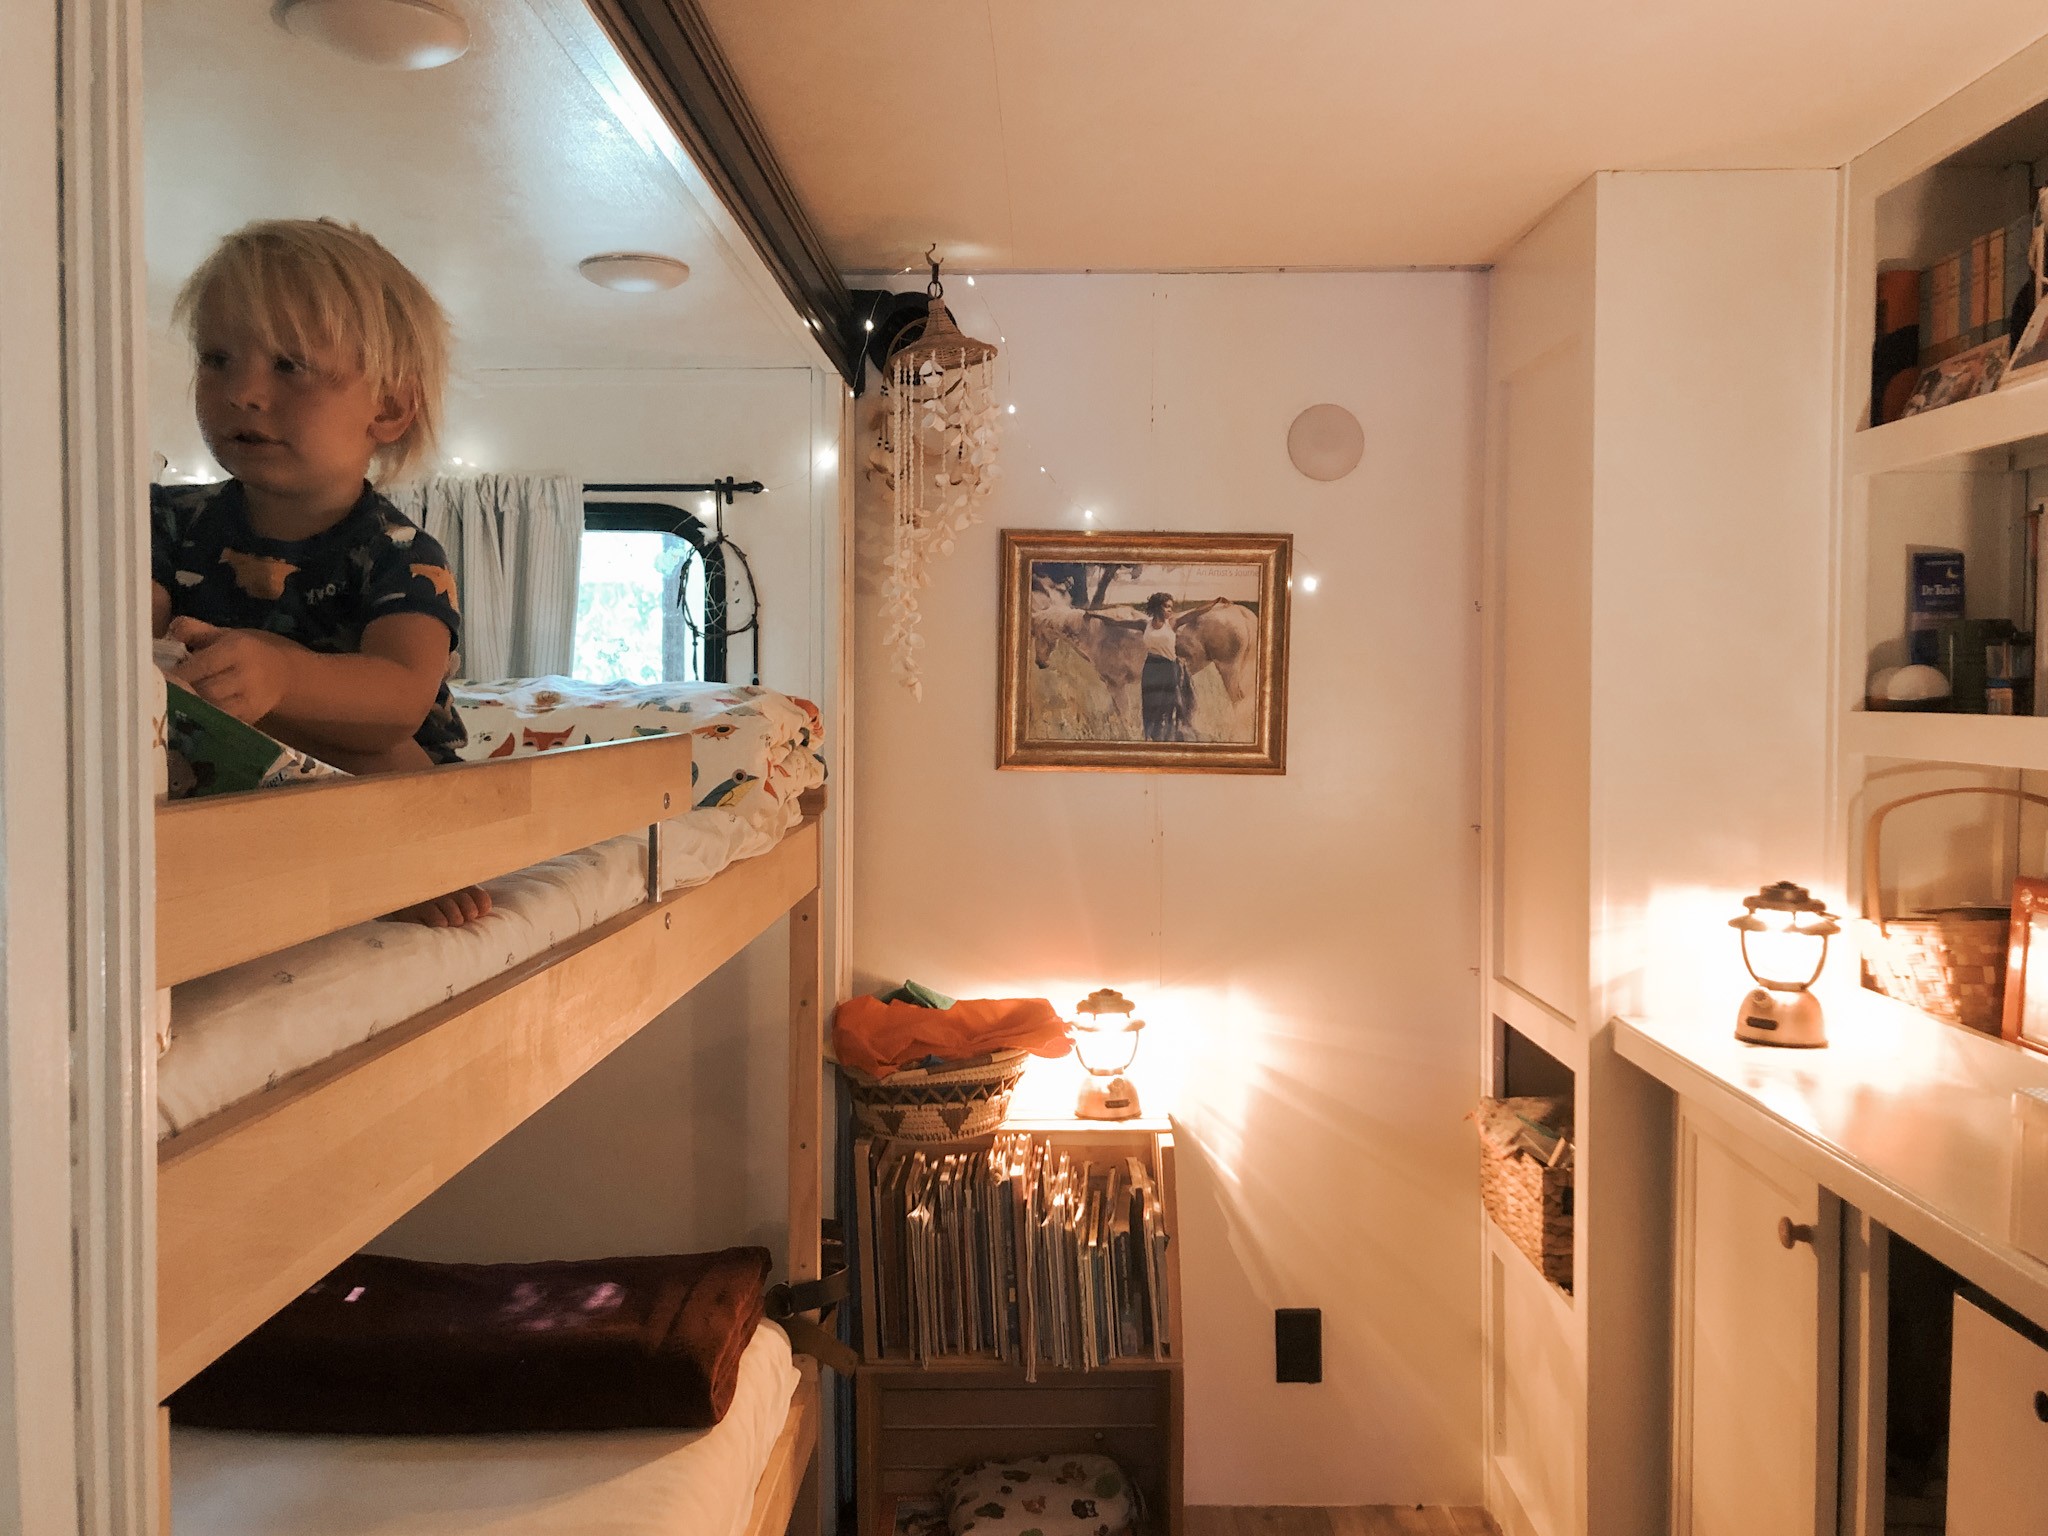 The bunkbeds inside the JC & BÄRBEL BARRINGER family's 2018 KZ Durango Gold fifth wheel